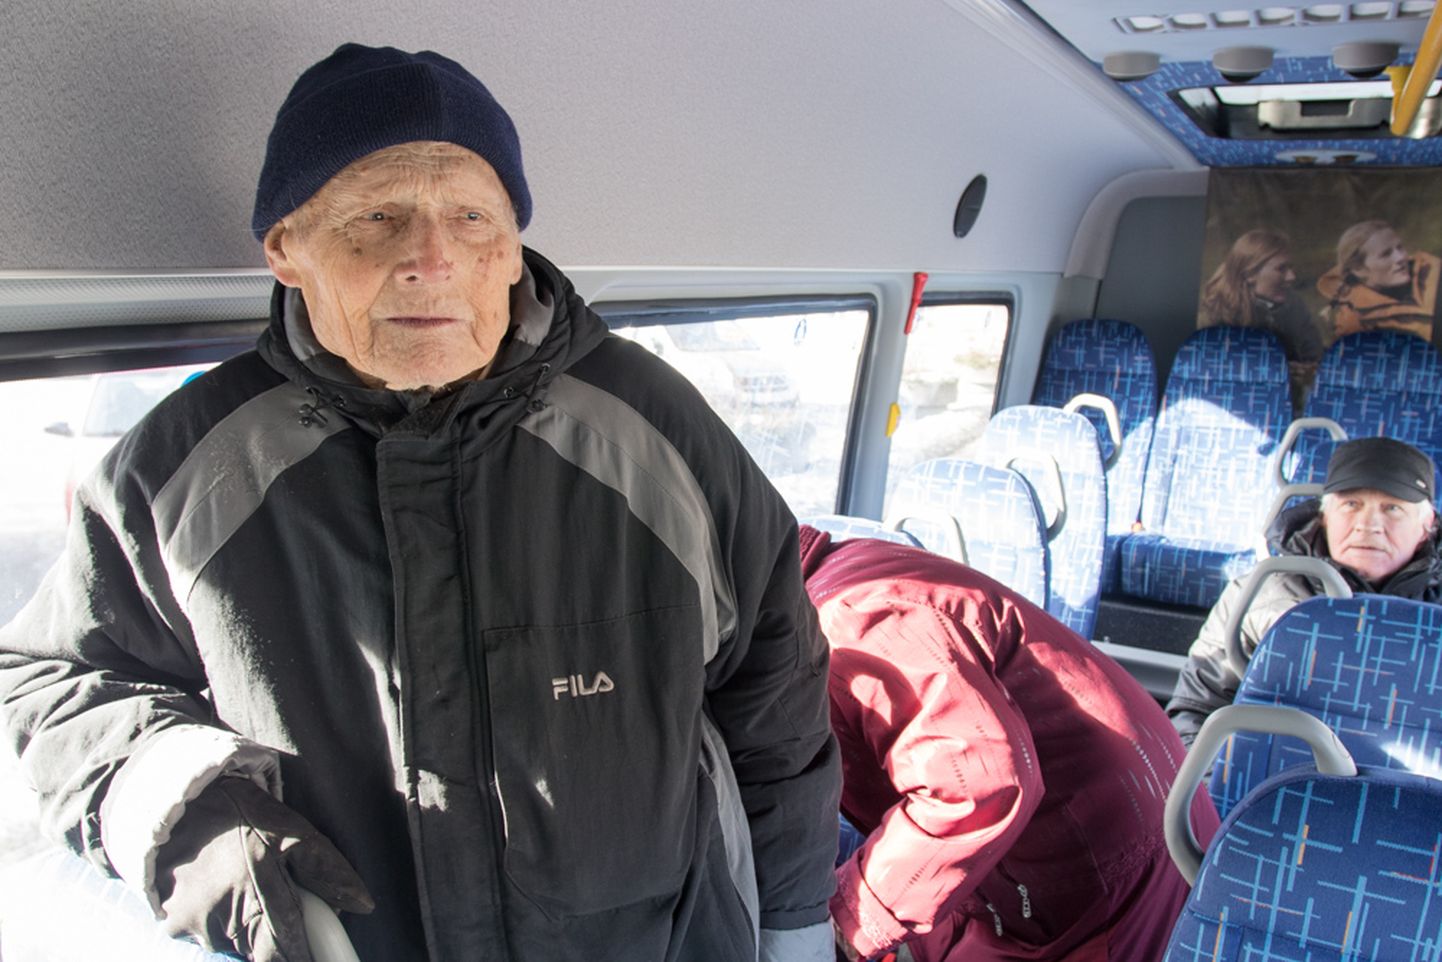 Eesti kodakondsust Õisus 55 aastat õpetajana töötanud Artemi Pedokile omal ajal ei antud, ning enam tal seda plaanis taotleda polegi, sest ta on juba 92 aastane.